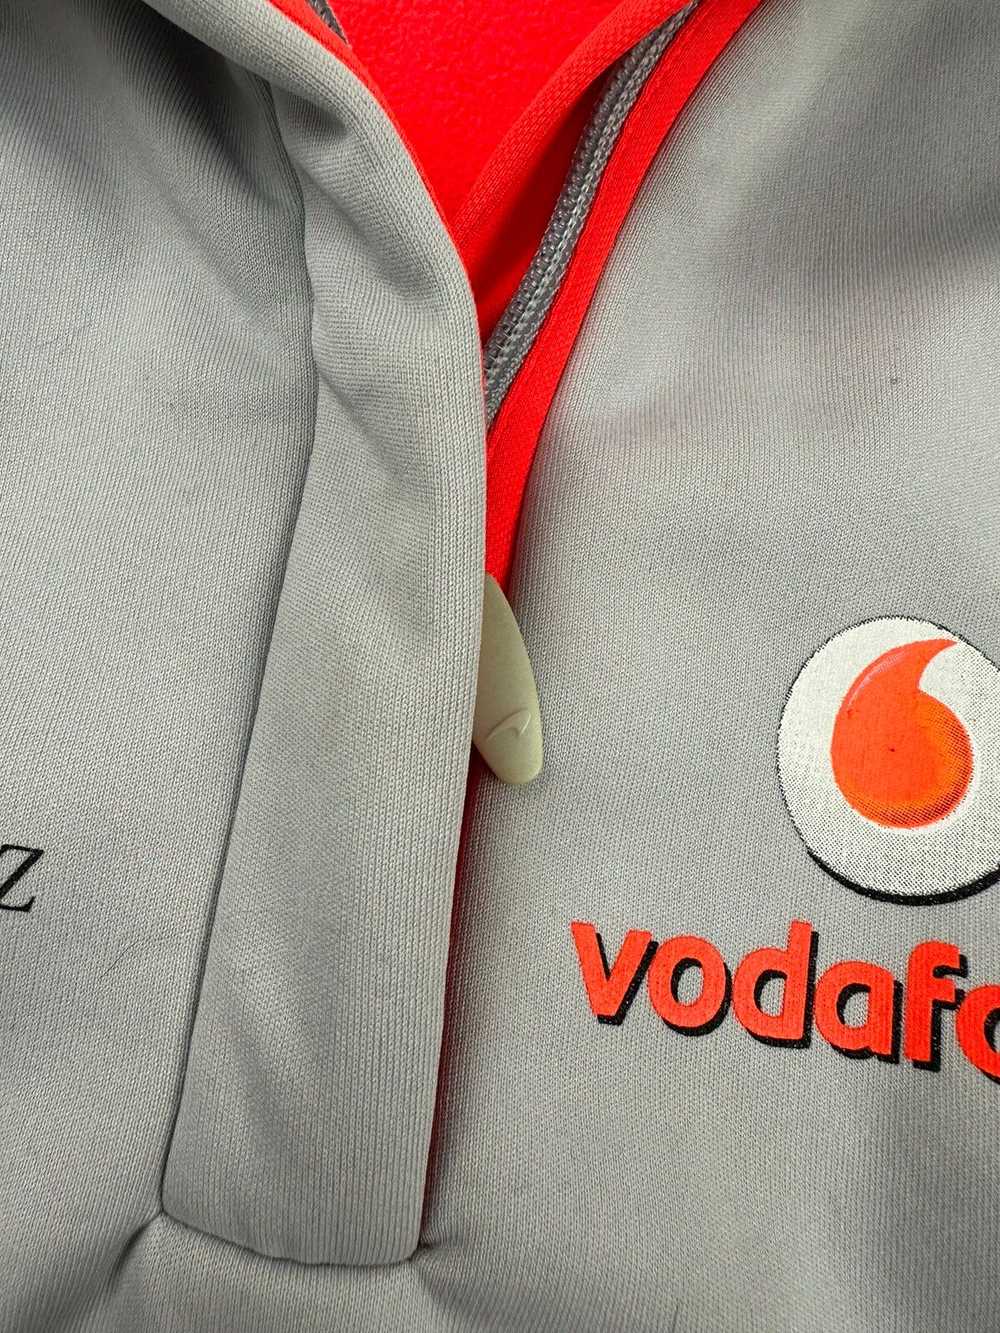 Malcolm McLaren × Mercedes Benz × Racing Vodafone… - image 3